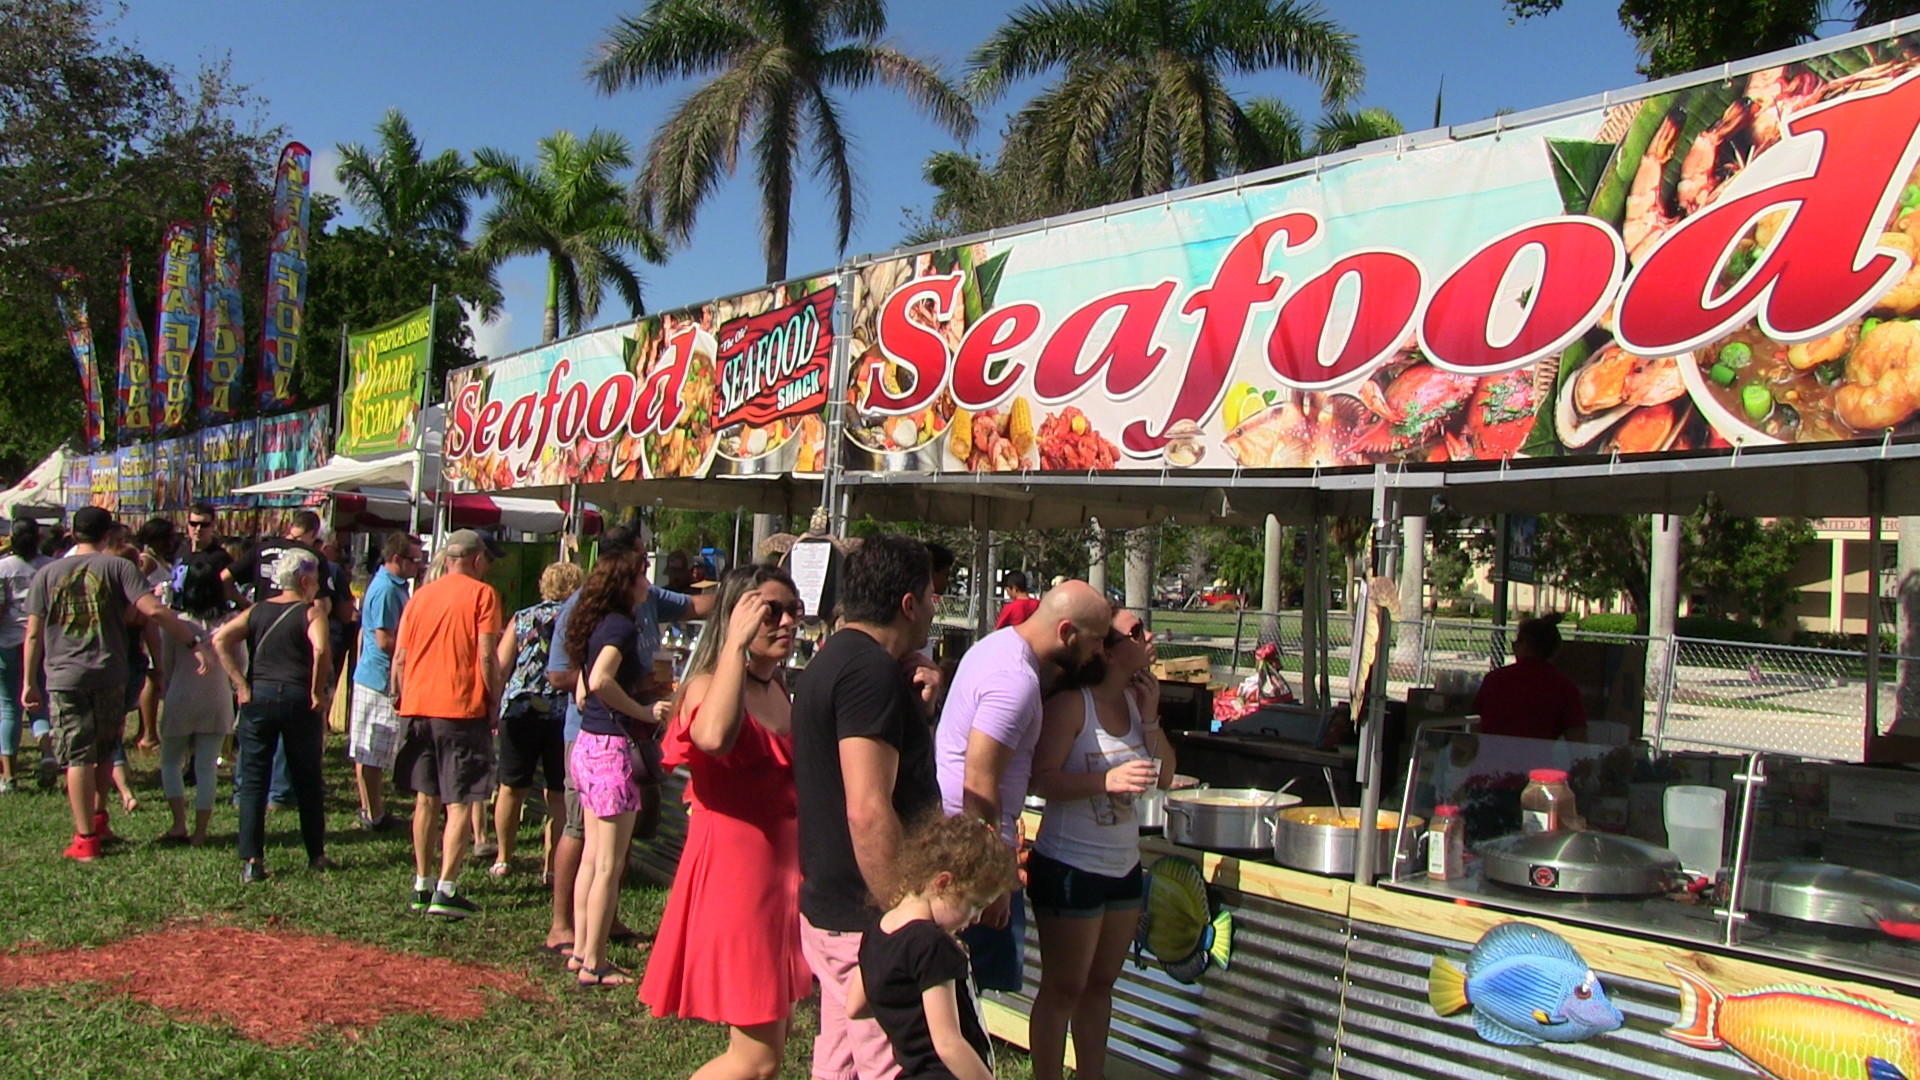 Seafood festival acontece neste fim de semana em Boca Raton